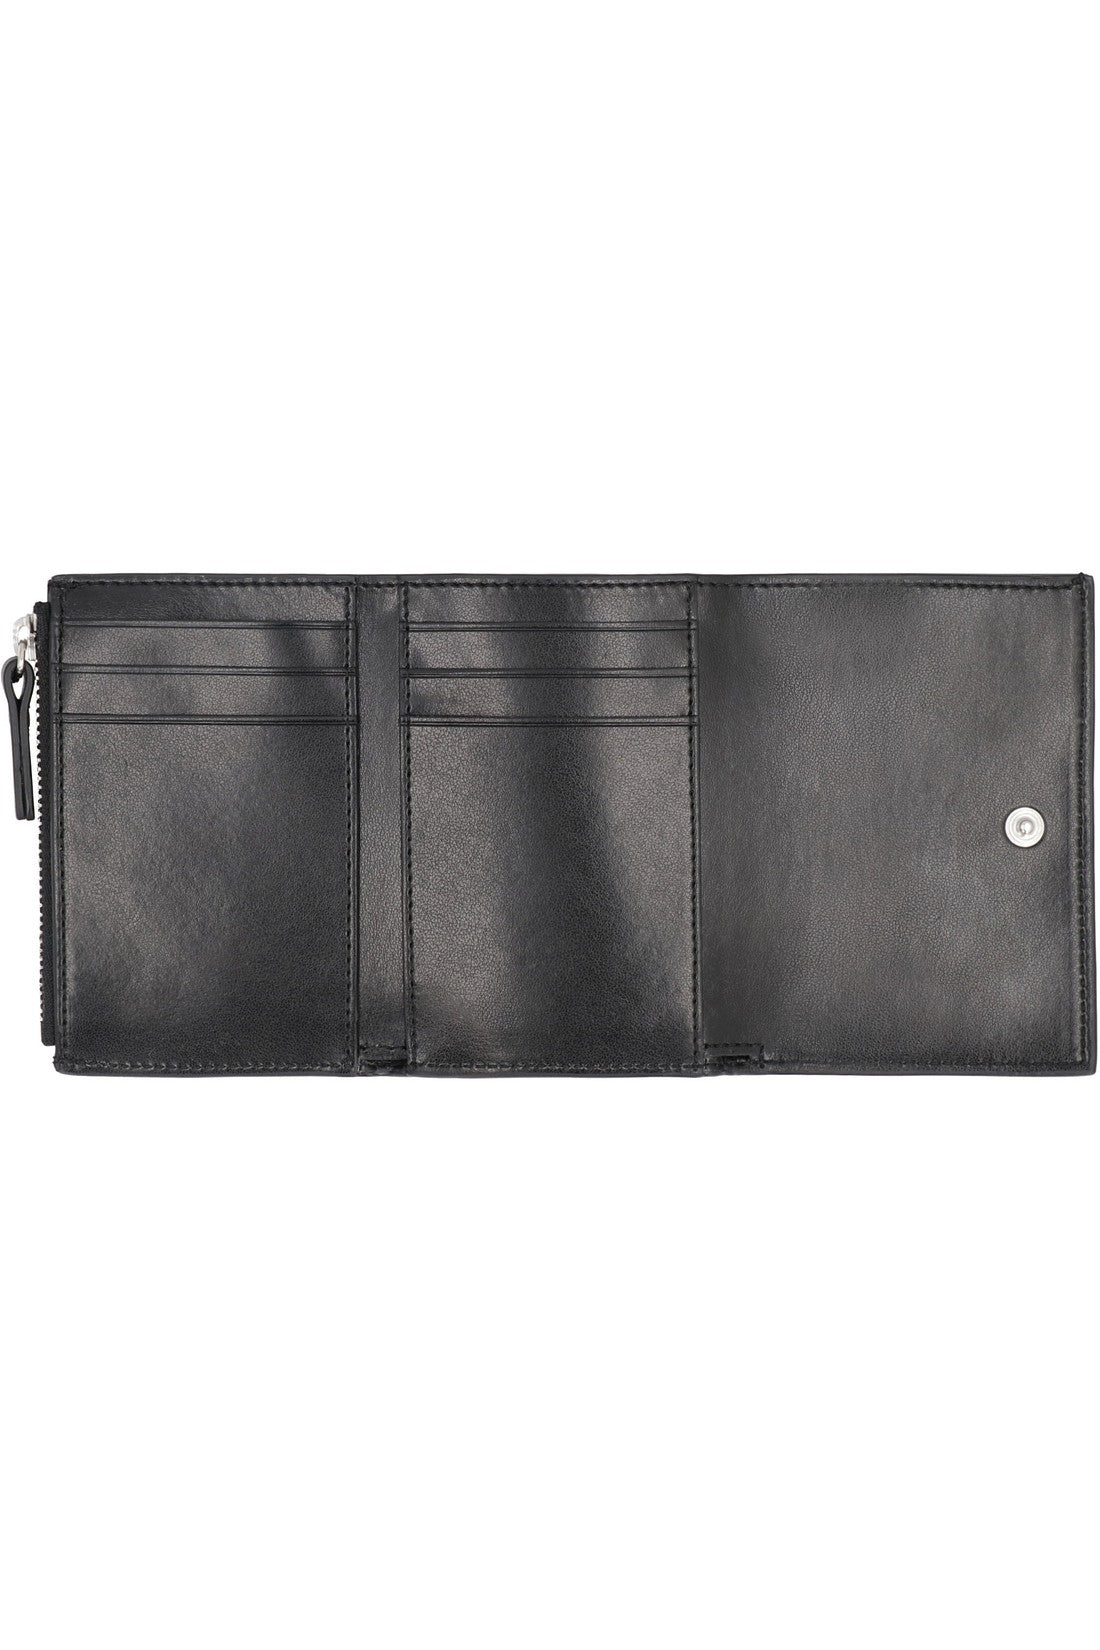 MM6 Maison Margiela-OUTLET-SALE-Leather wallet-ARCHIVIST